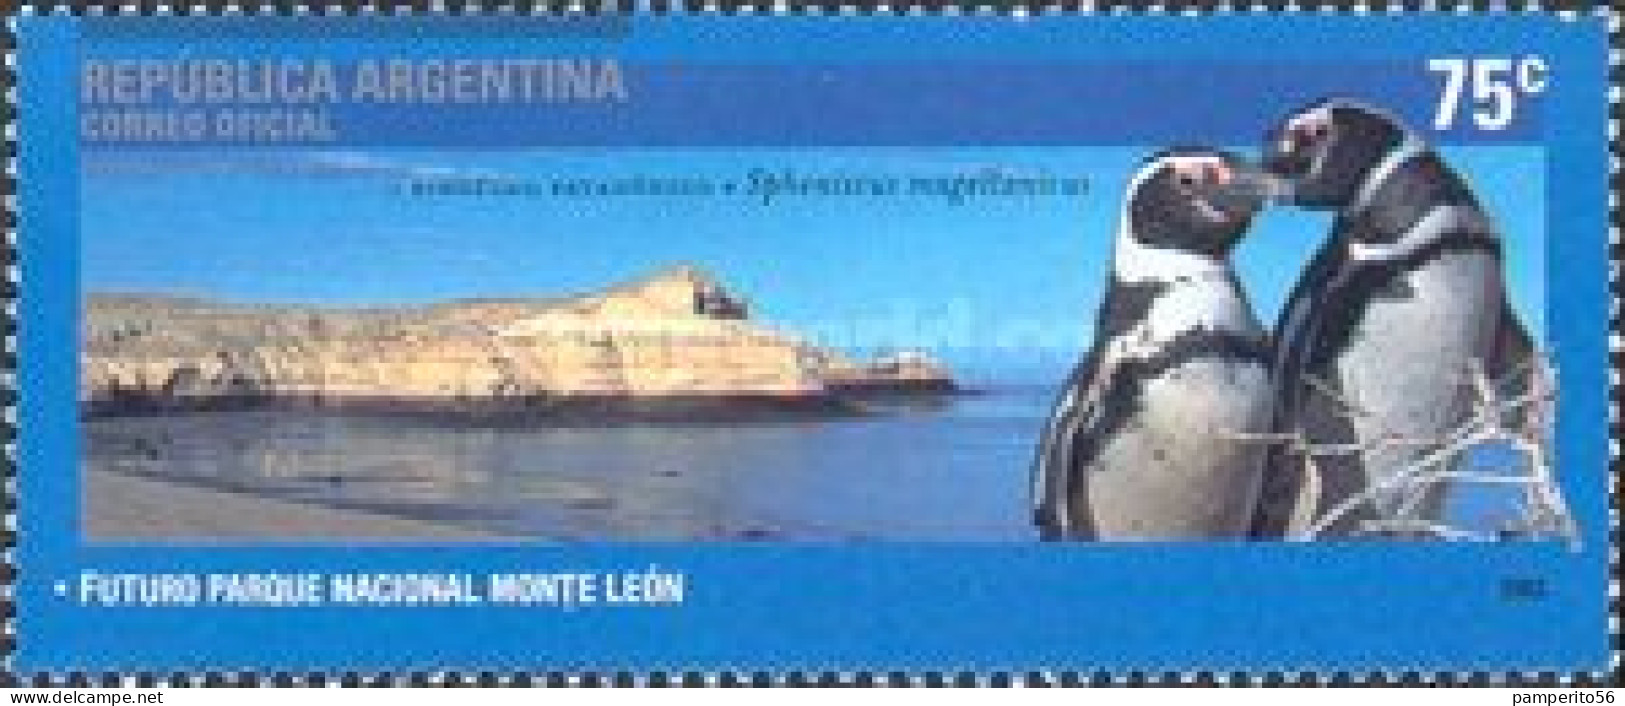 ARGENTINA - AÑO 2003 - Parques Nacionales, Parque Nacional Monte León, Pinguino Patagónico - Usada - Gebruikt